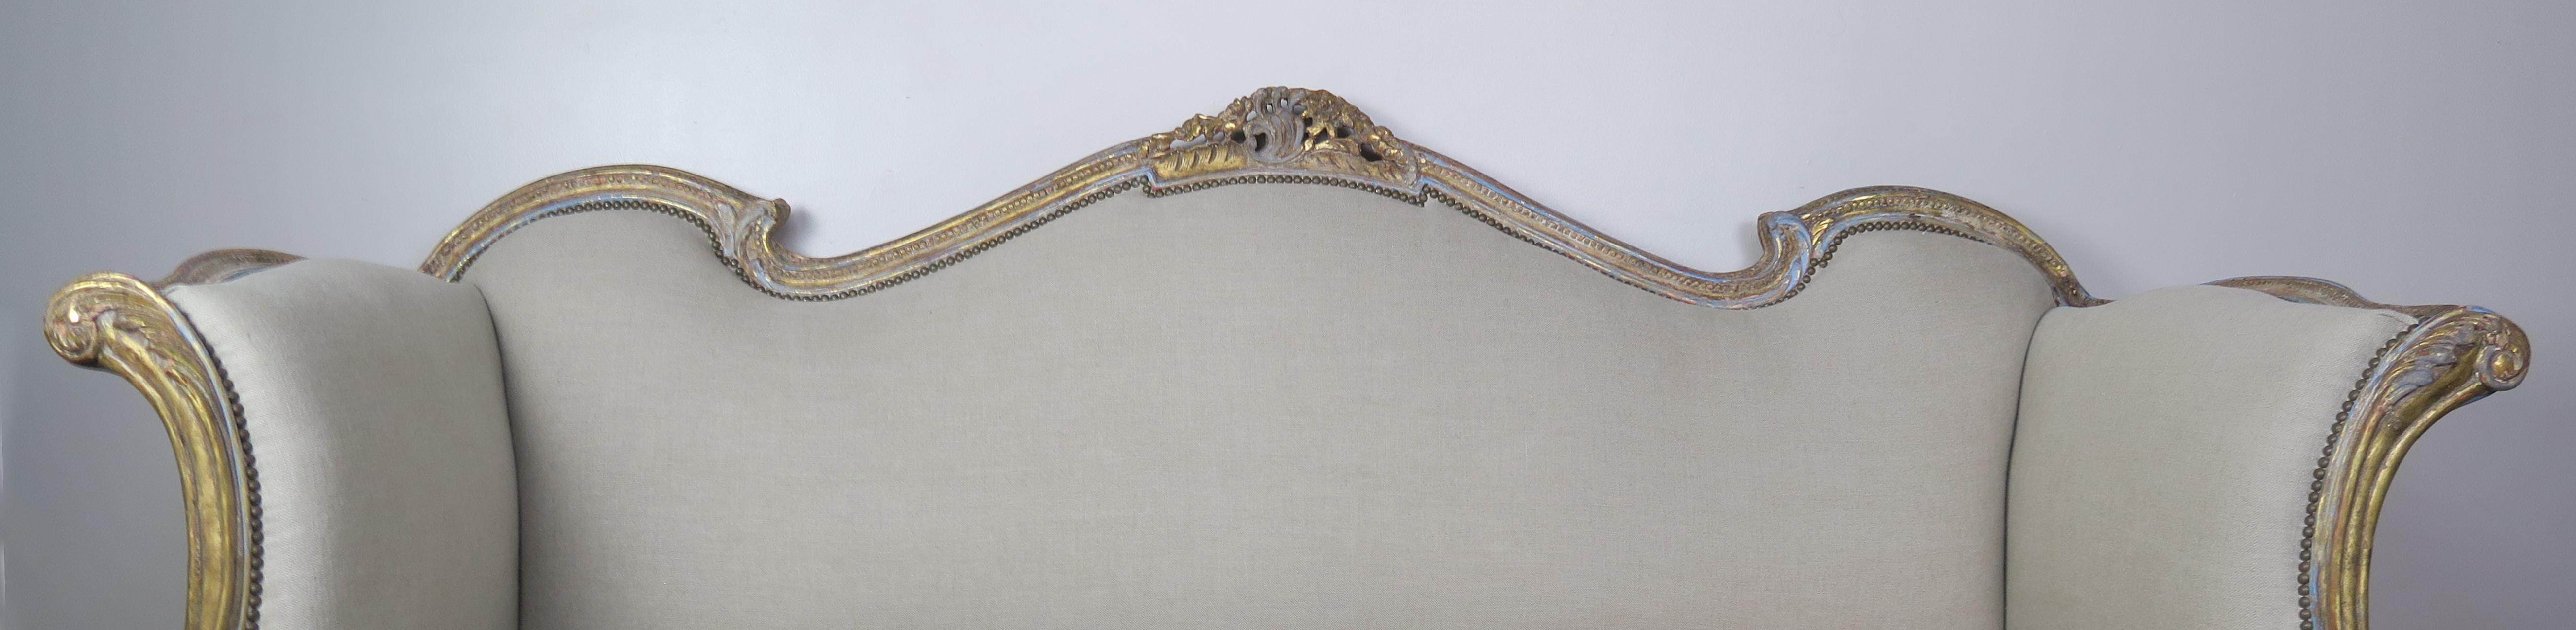 gemaltes und paketvergoldetes französisches Sofa im Stil von Louis XV aus dem 19. Das Sofa hat exquisite Linien und ist in einer französischen Blau- und Goldtönung mit 22-karätigen Blattgoldakzenten gehalten. Das Sofa ist mit naturfarbenem Leinen